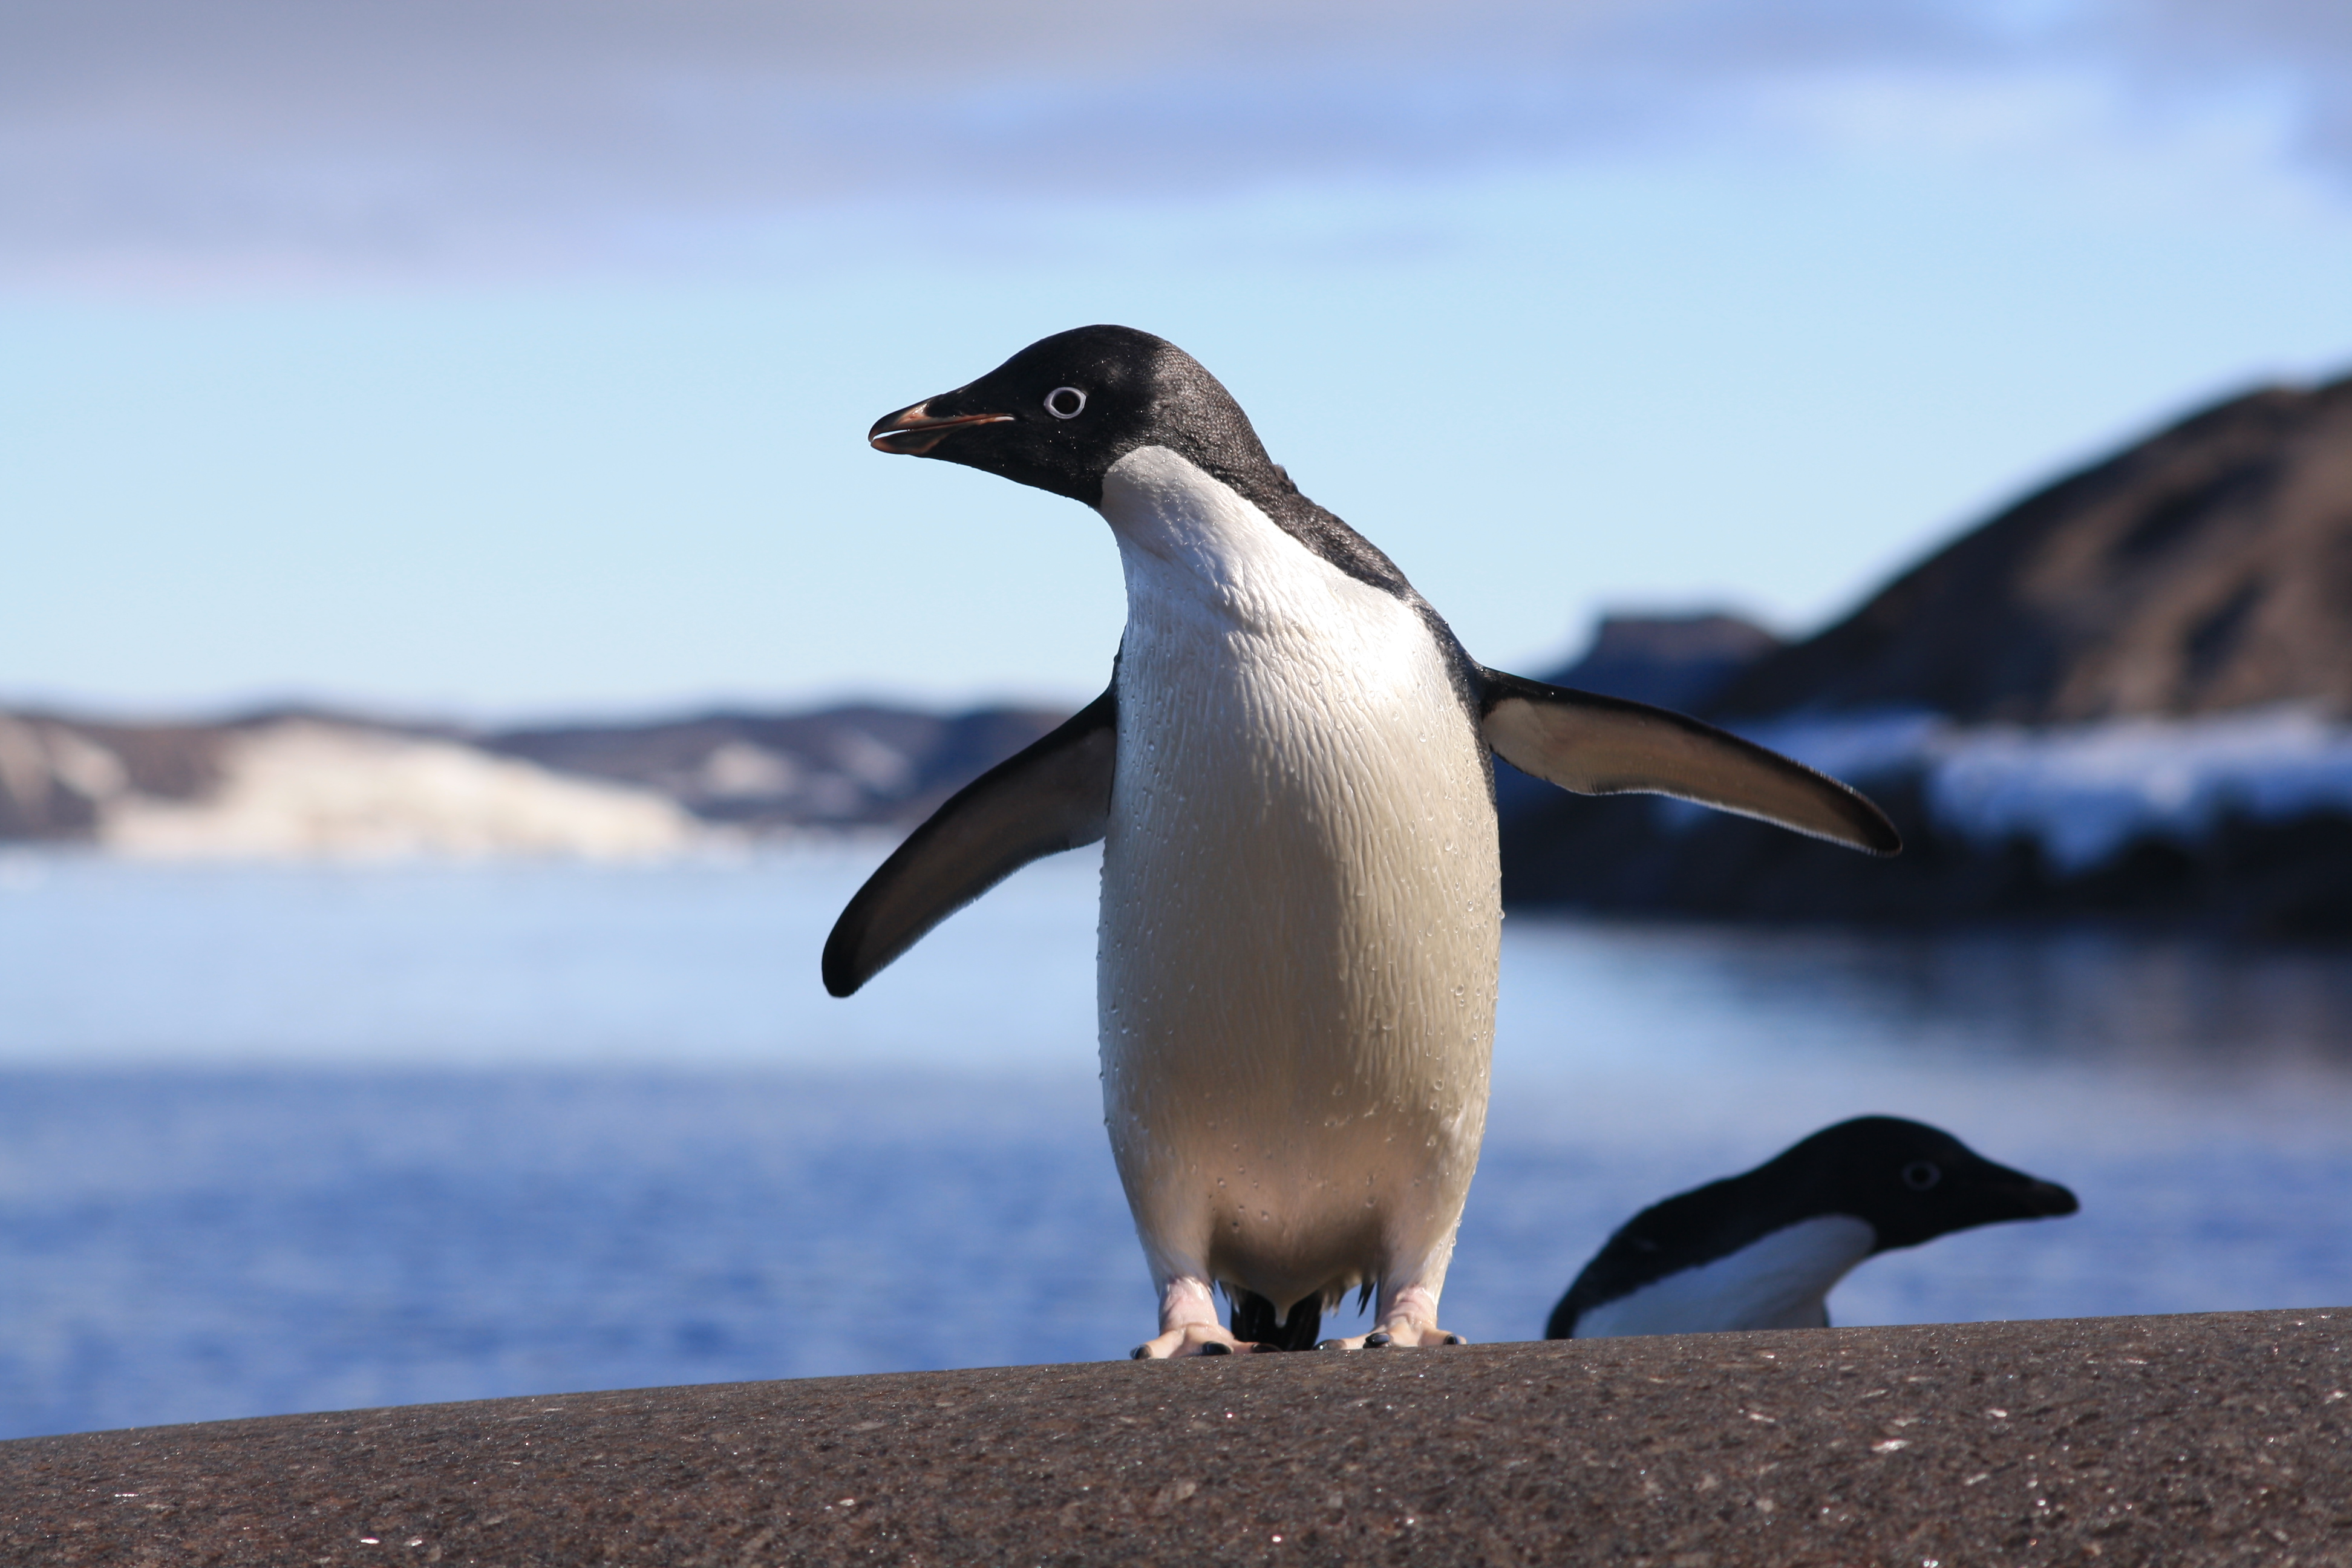 Adélie penguins - the climate change winners? - BMC Series ...